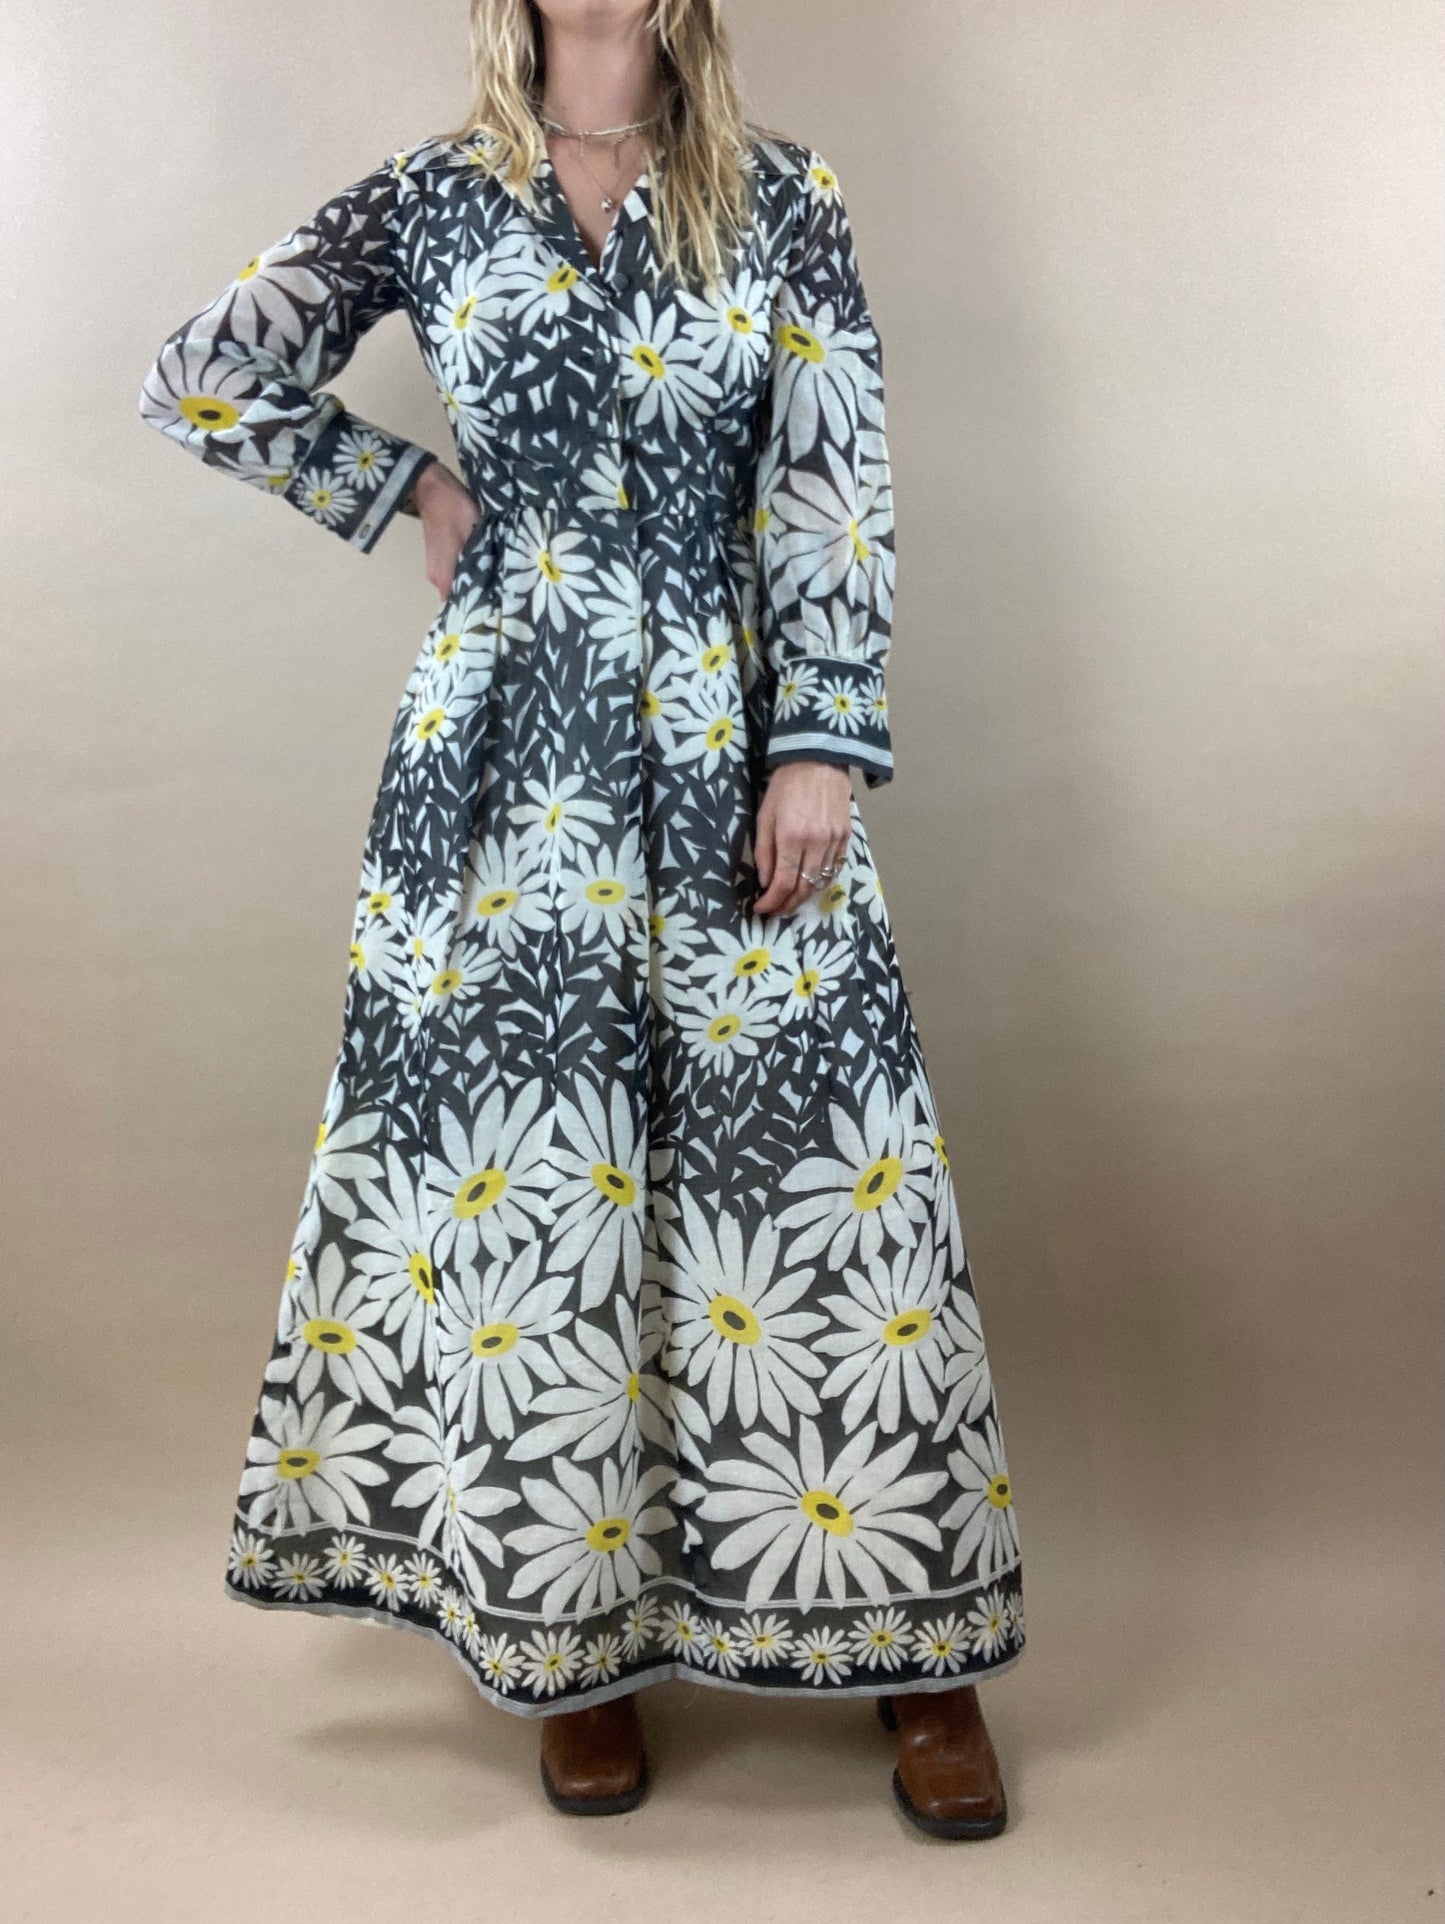 1970s Daisy Print Collared Maxi Dres / Vintage 70s Long Sleeve Hippie Boho Sun Dress / Small